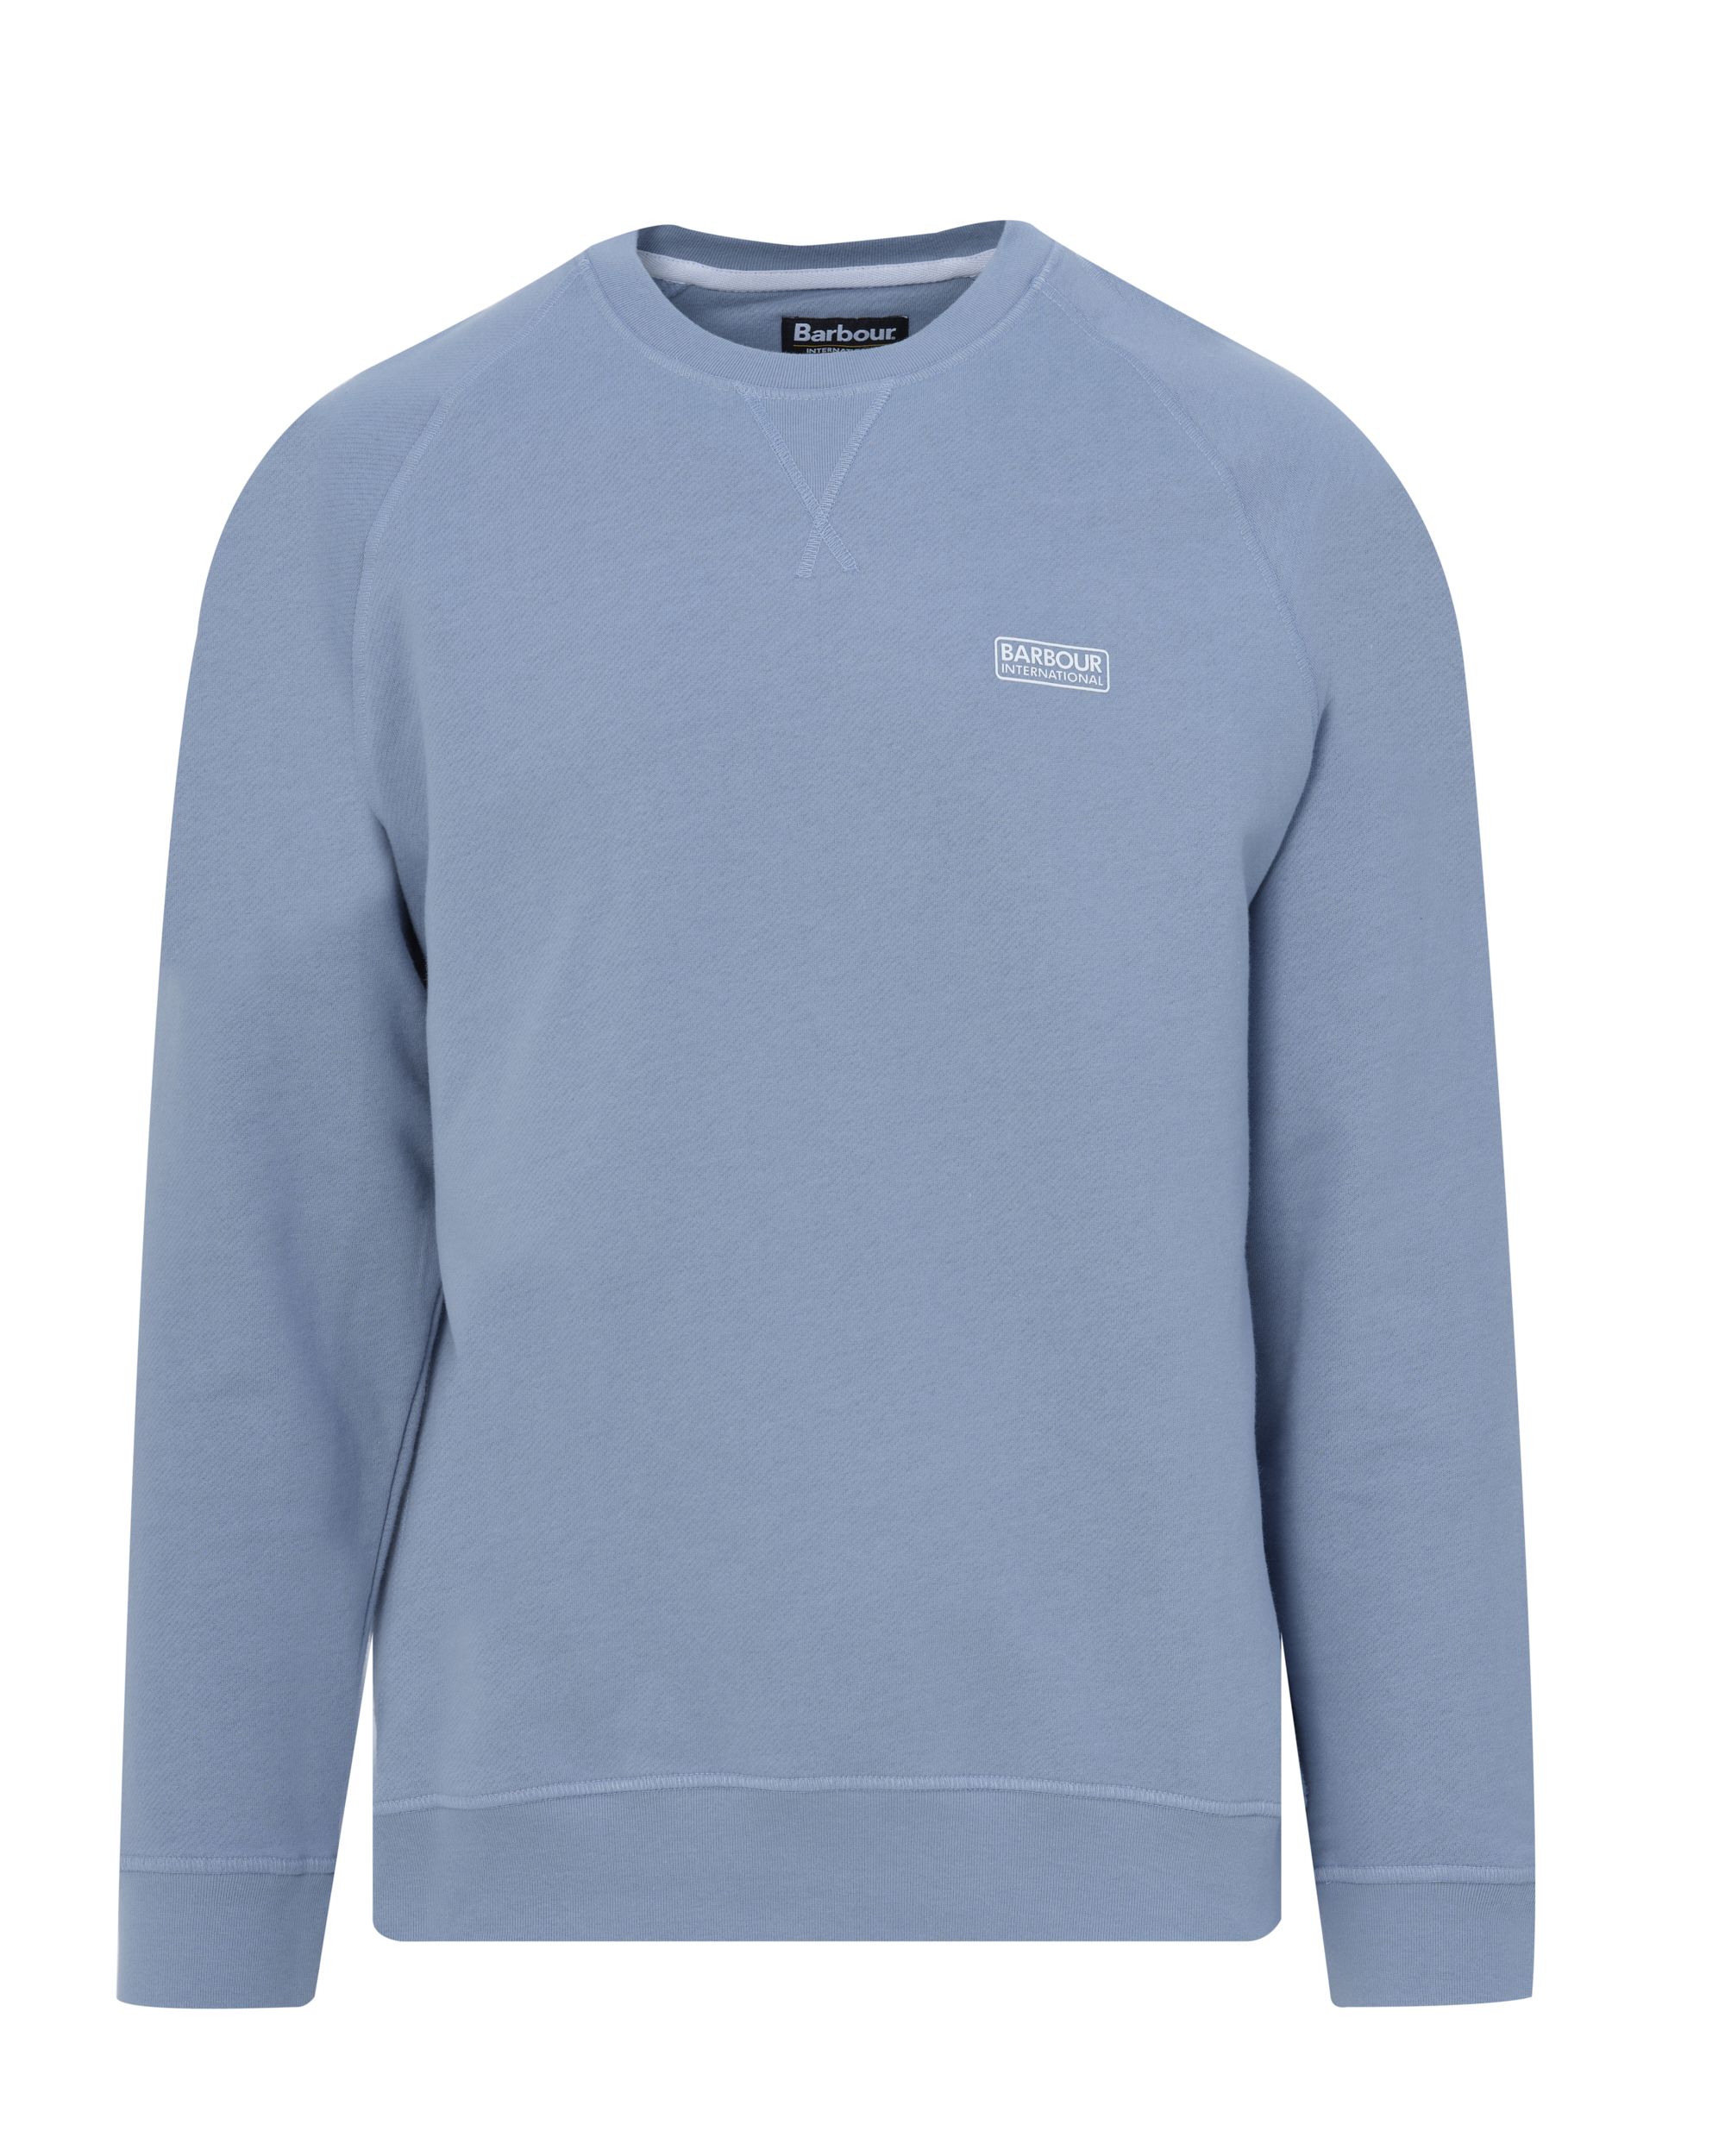 Barbour International Sweater Licht blauw 083323-001-L